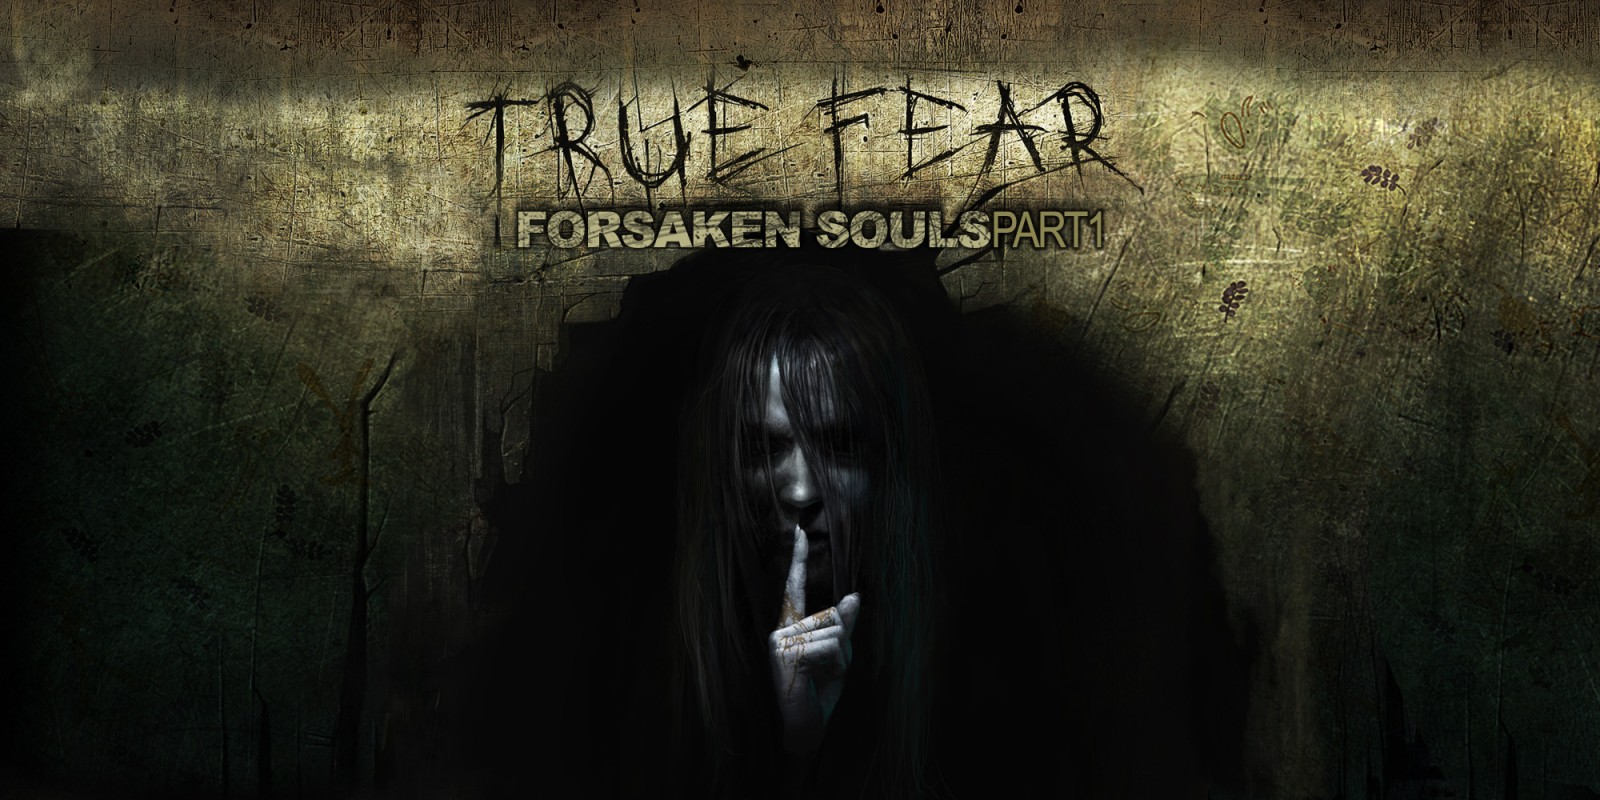 True Fear: Forsaken Souls - Part 1